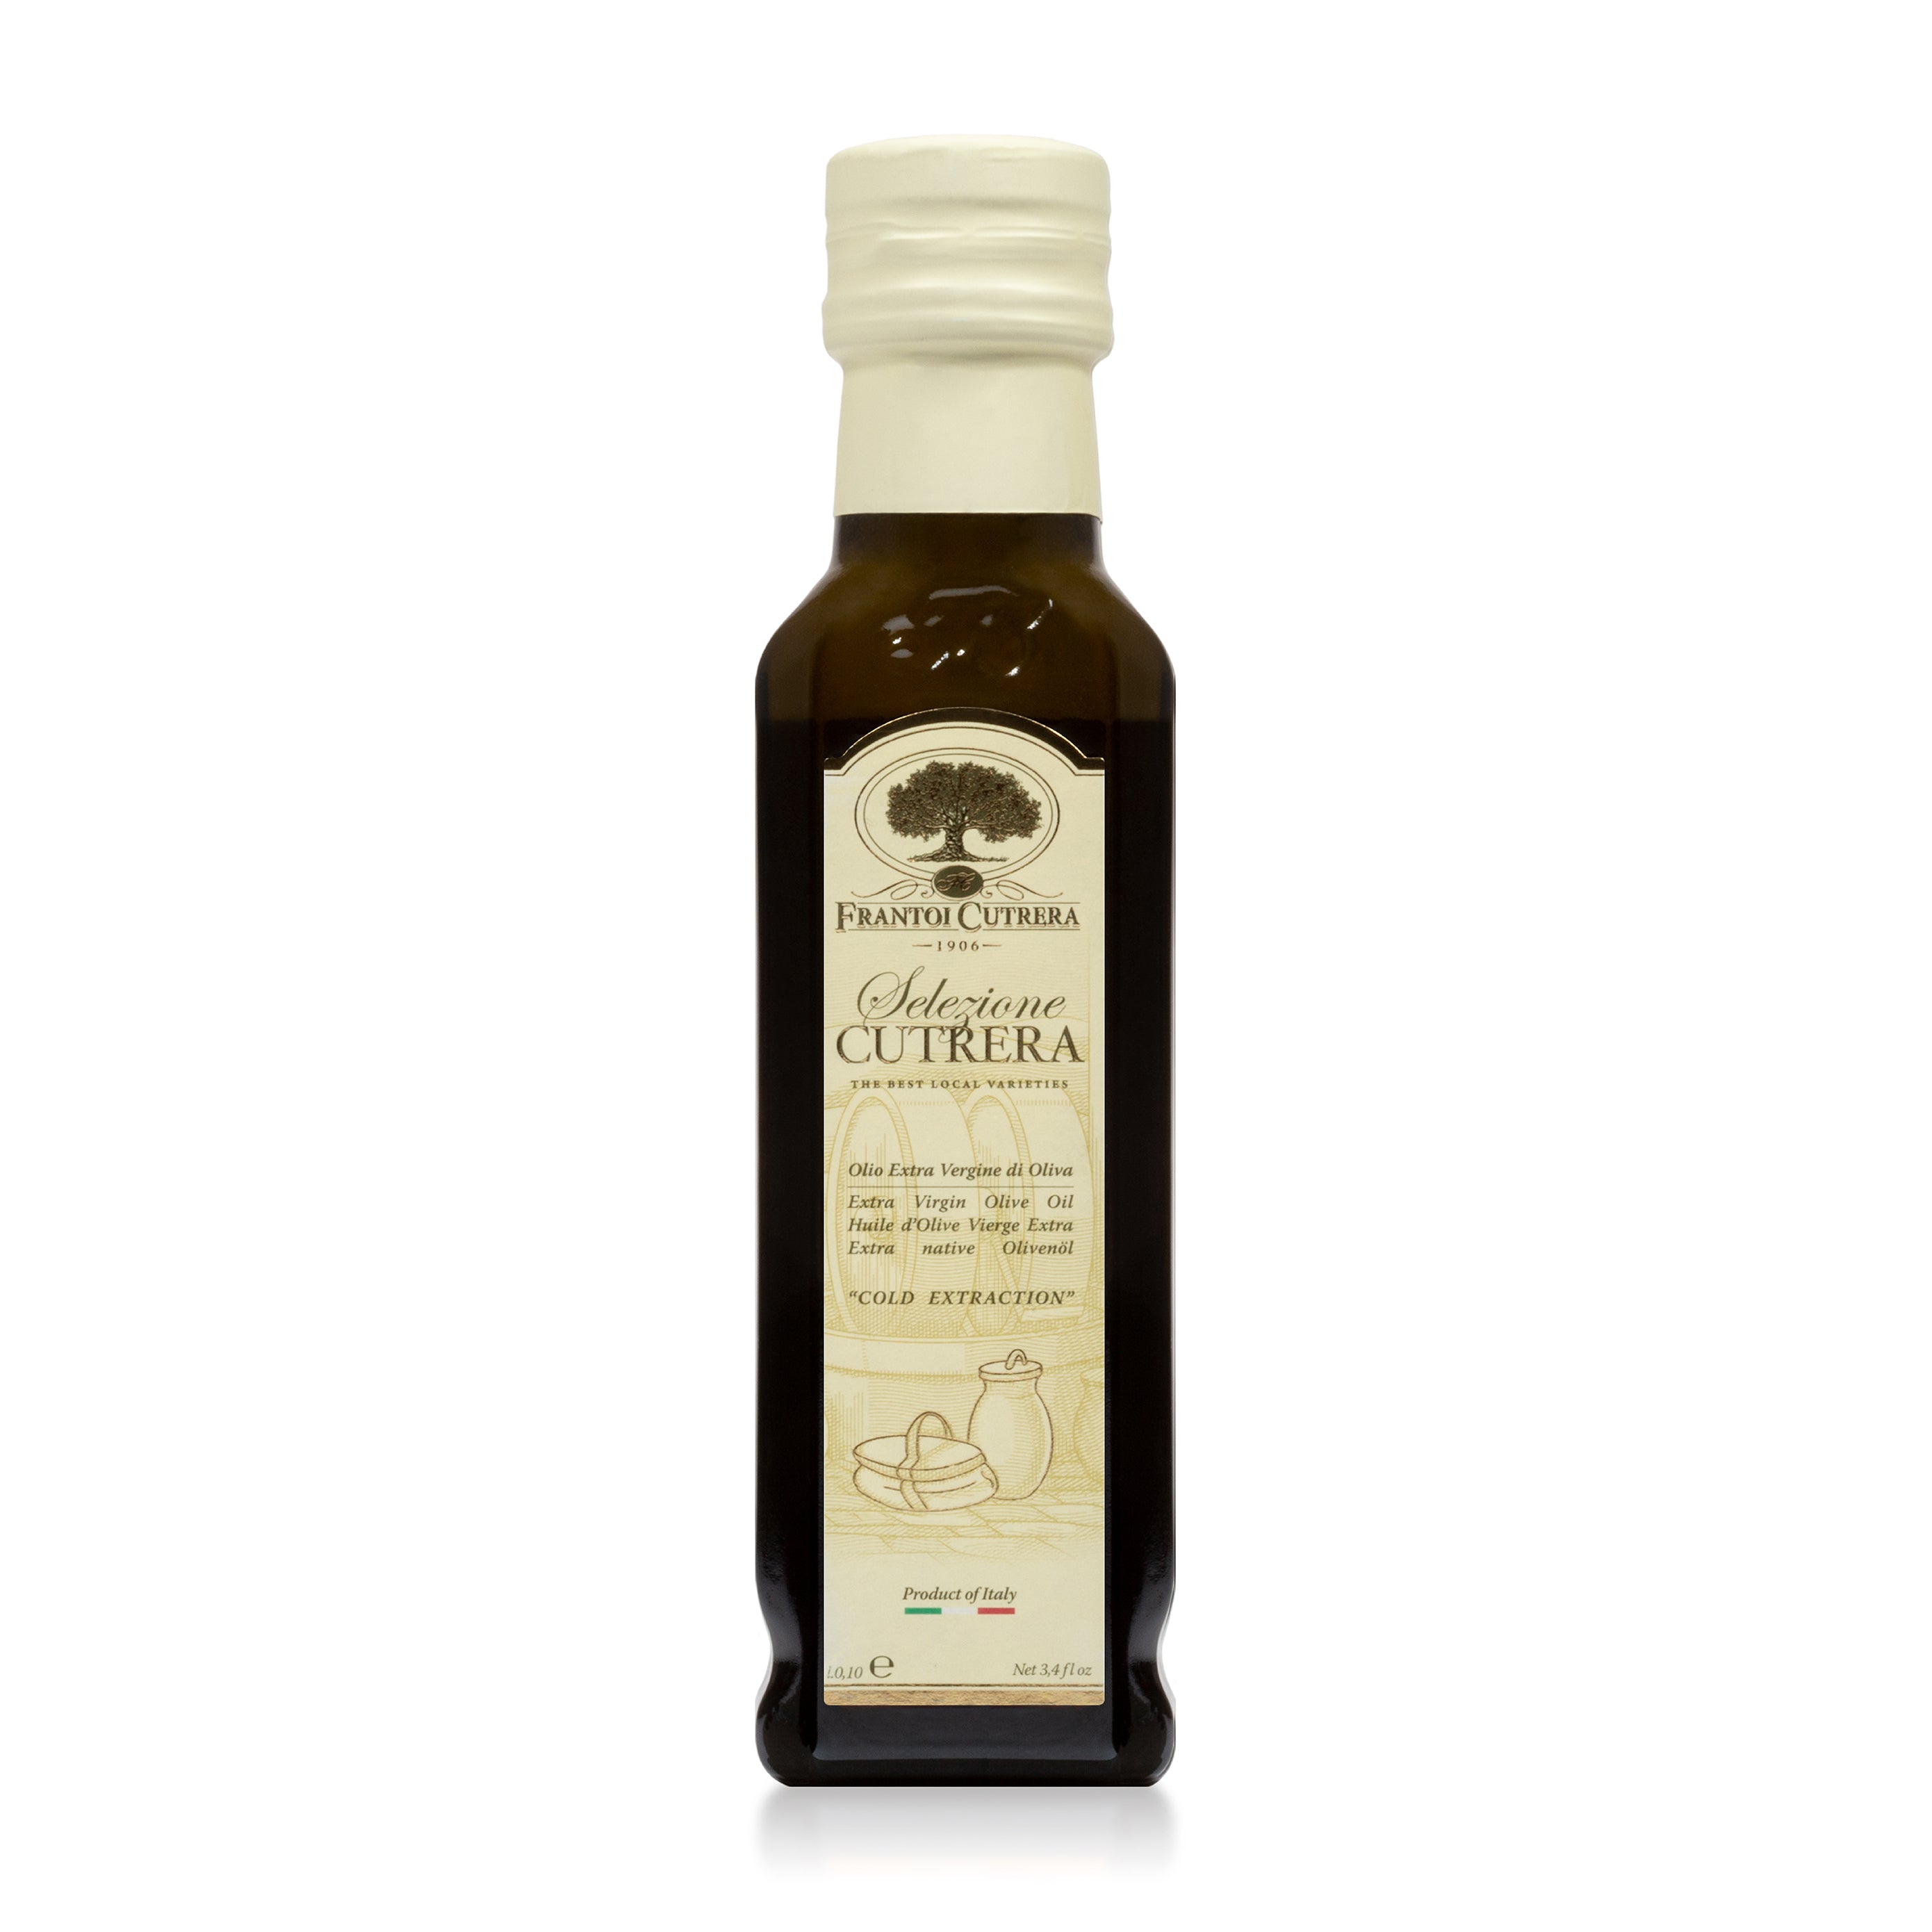 Selezione Cutrera Extra Virgin Olive Oil by Frantoi Cutrera